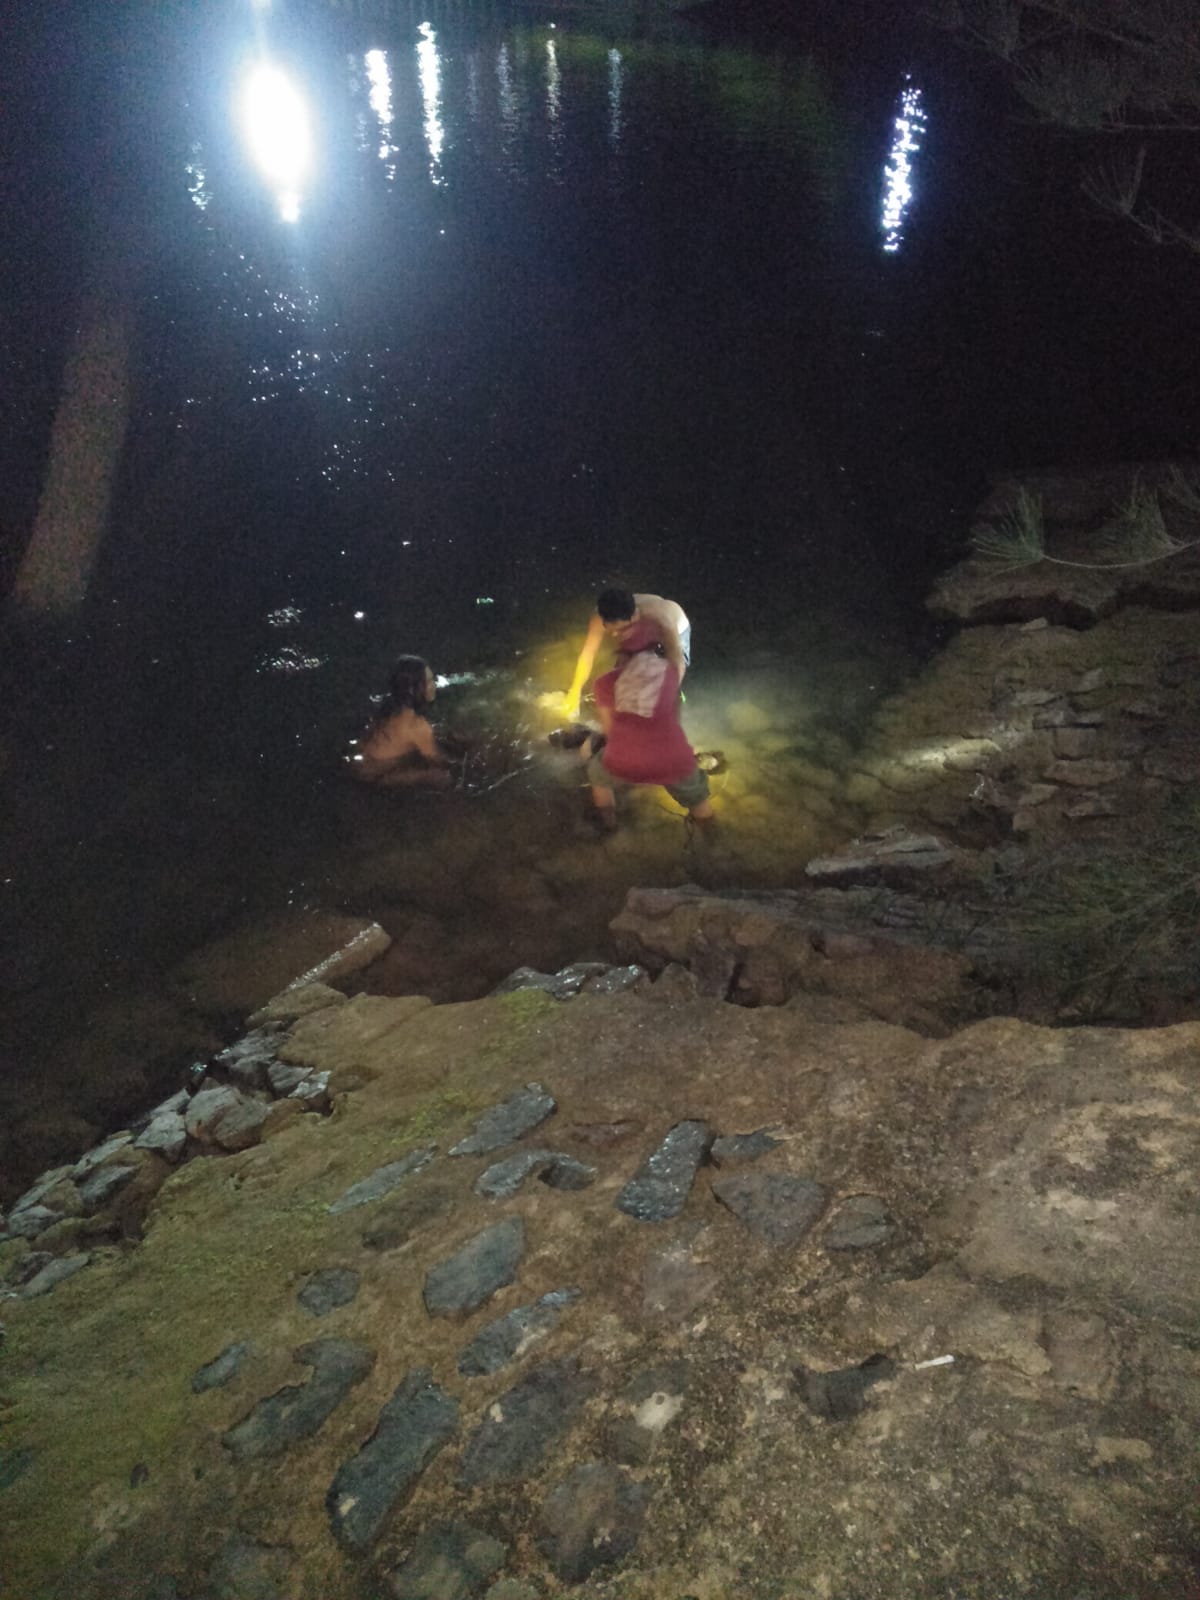 Innalillahi, Remaja Hilang di Perairan Tanjunguncang Ditemukan Meninggal Dunia